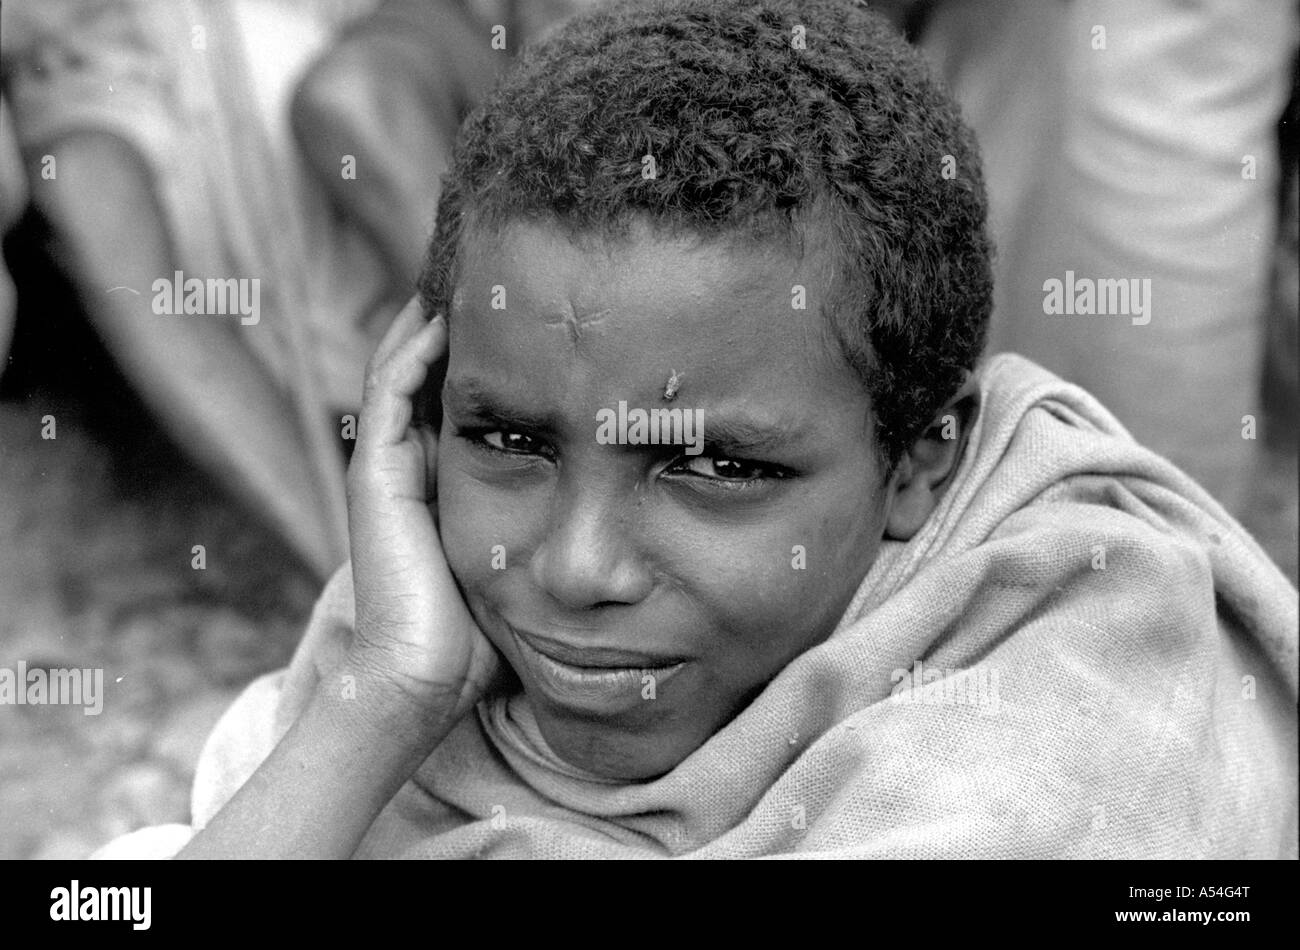 Painet HQ1420 bianco e nero ragazzo di stress in attesa della distribuzione alimentare centro harer Etiopia volare affamato immagini pazienza triste Foto Stock